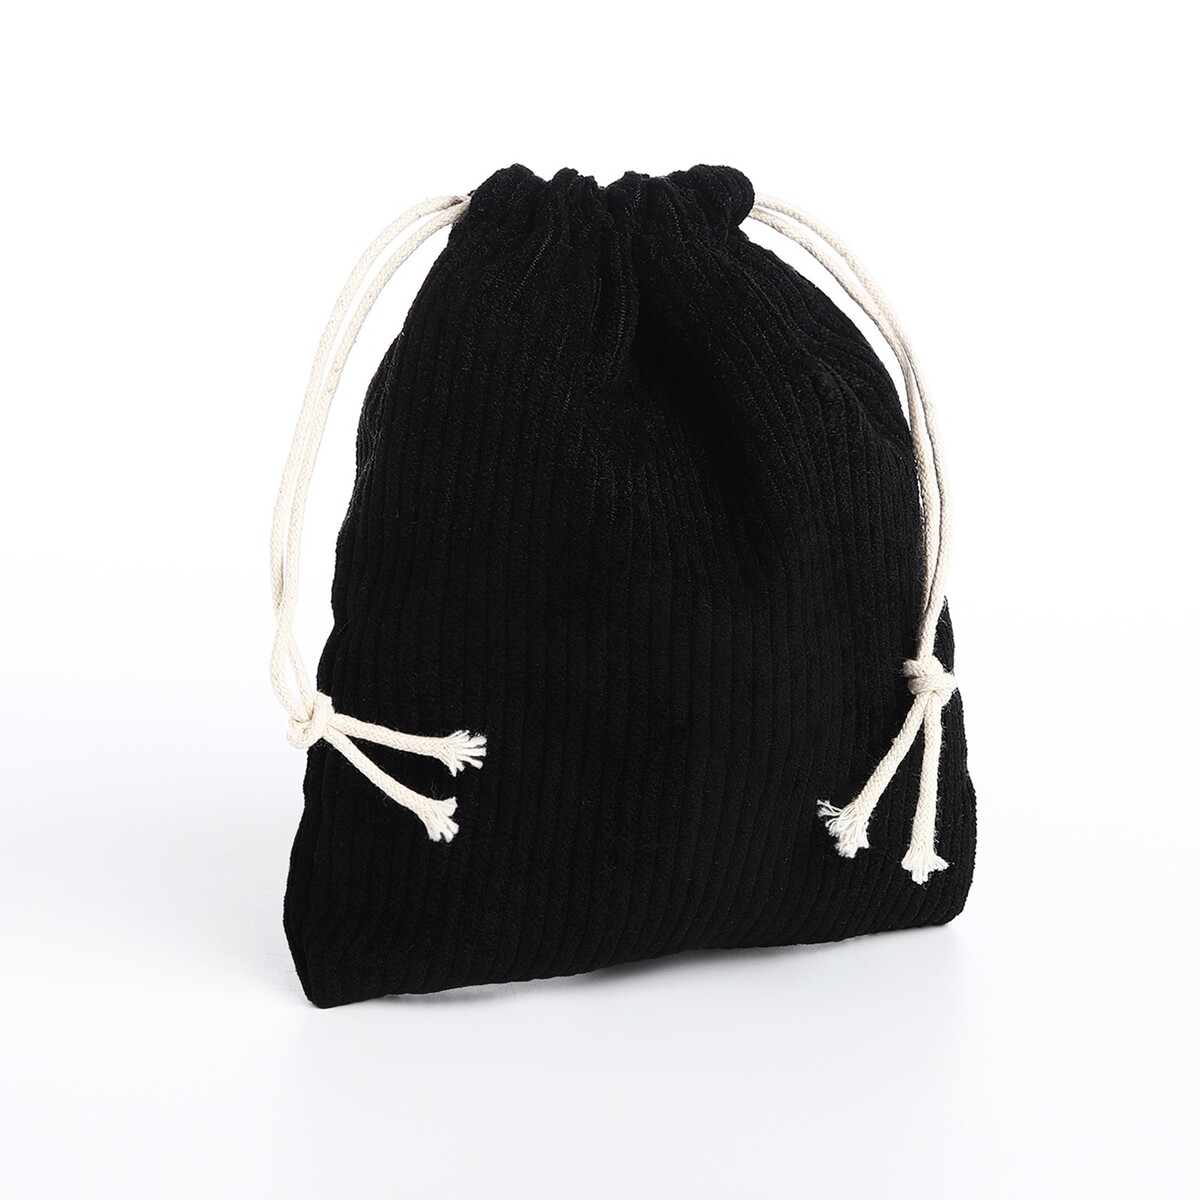 Косметичка - мешок с завязками, цвет черный косметичка мешок с завязками горчичный